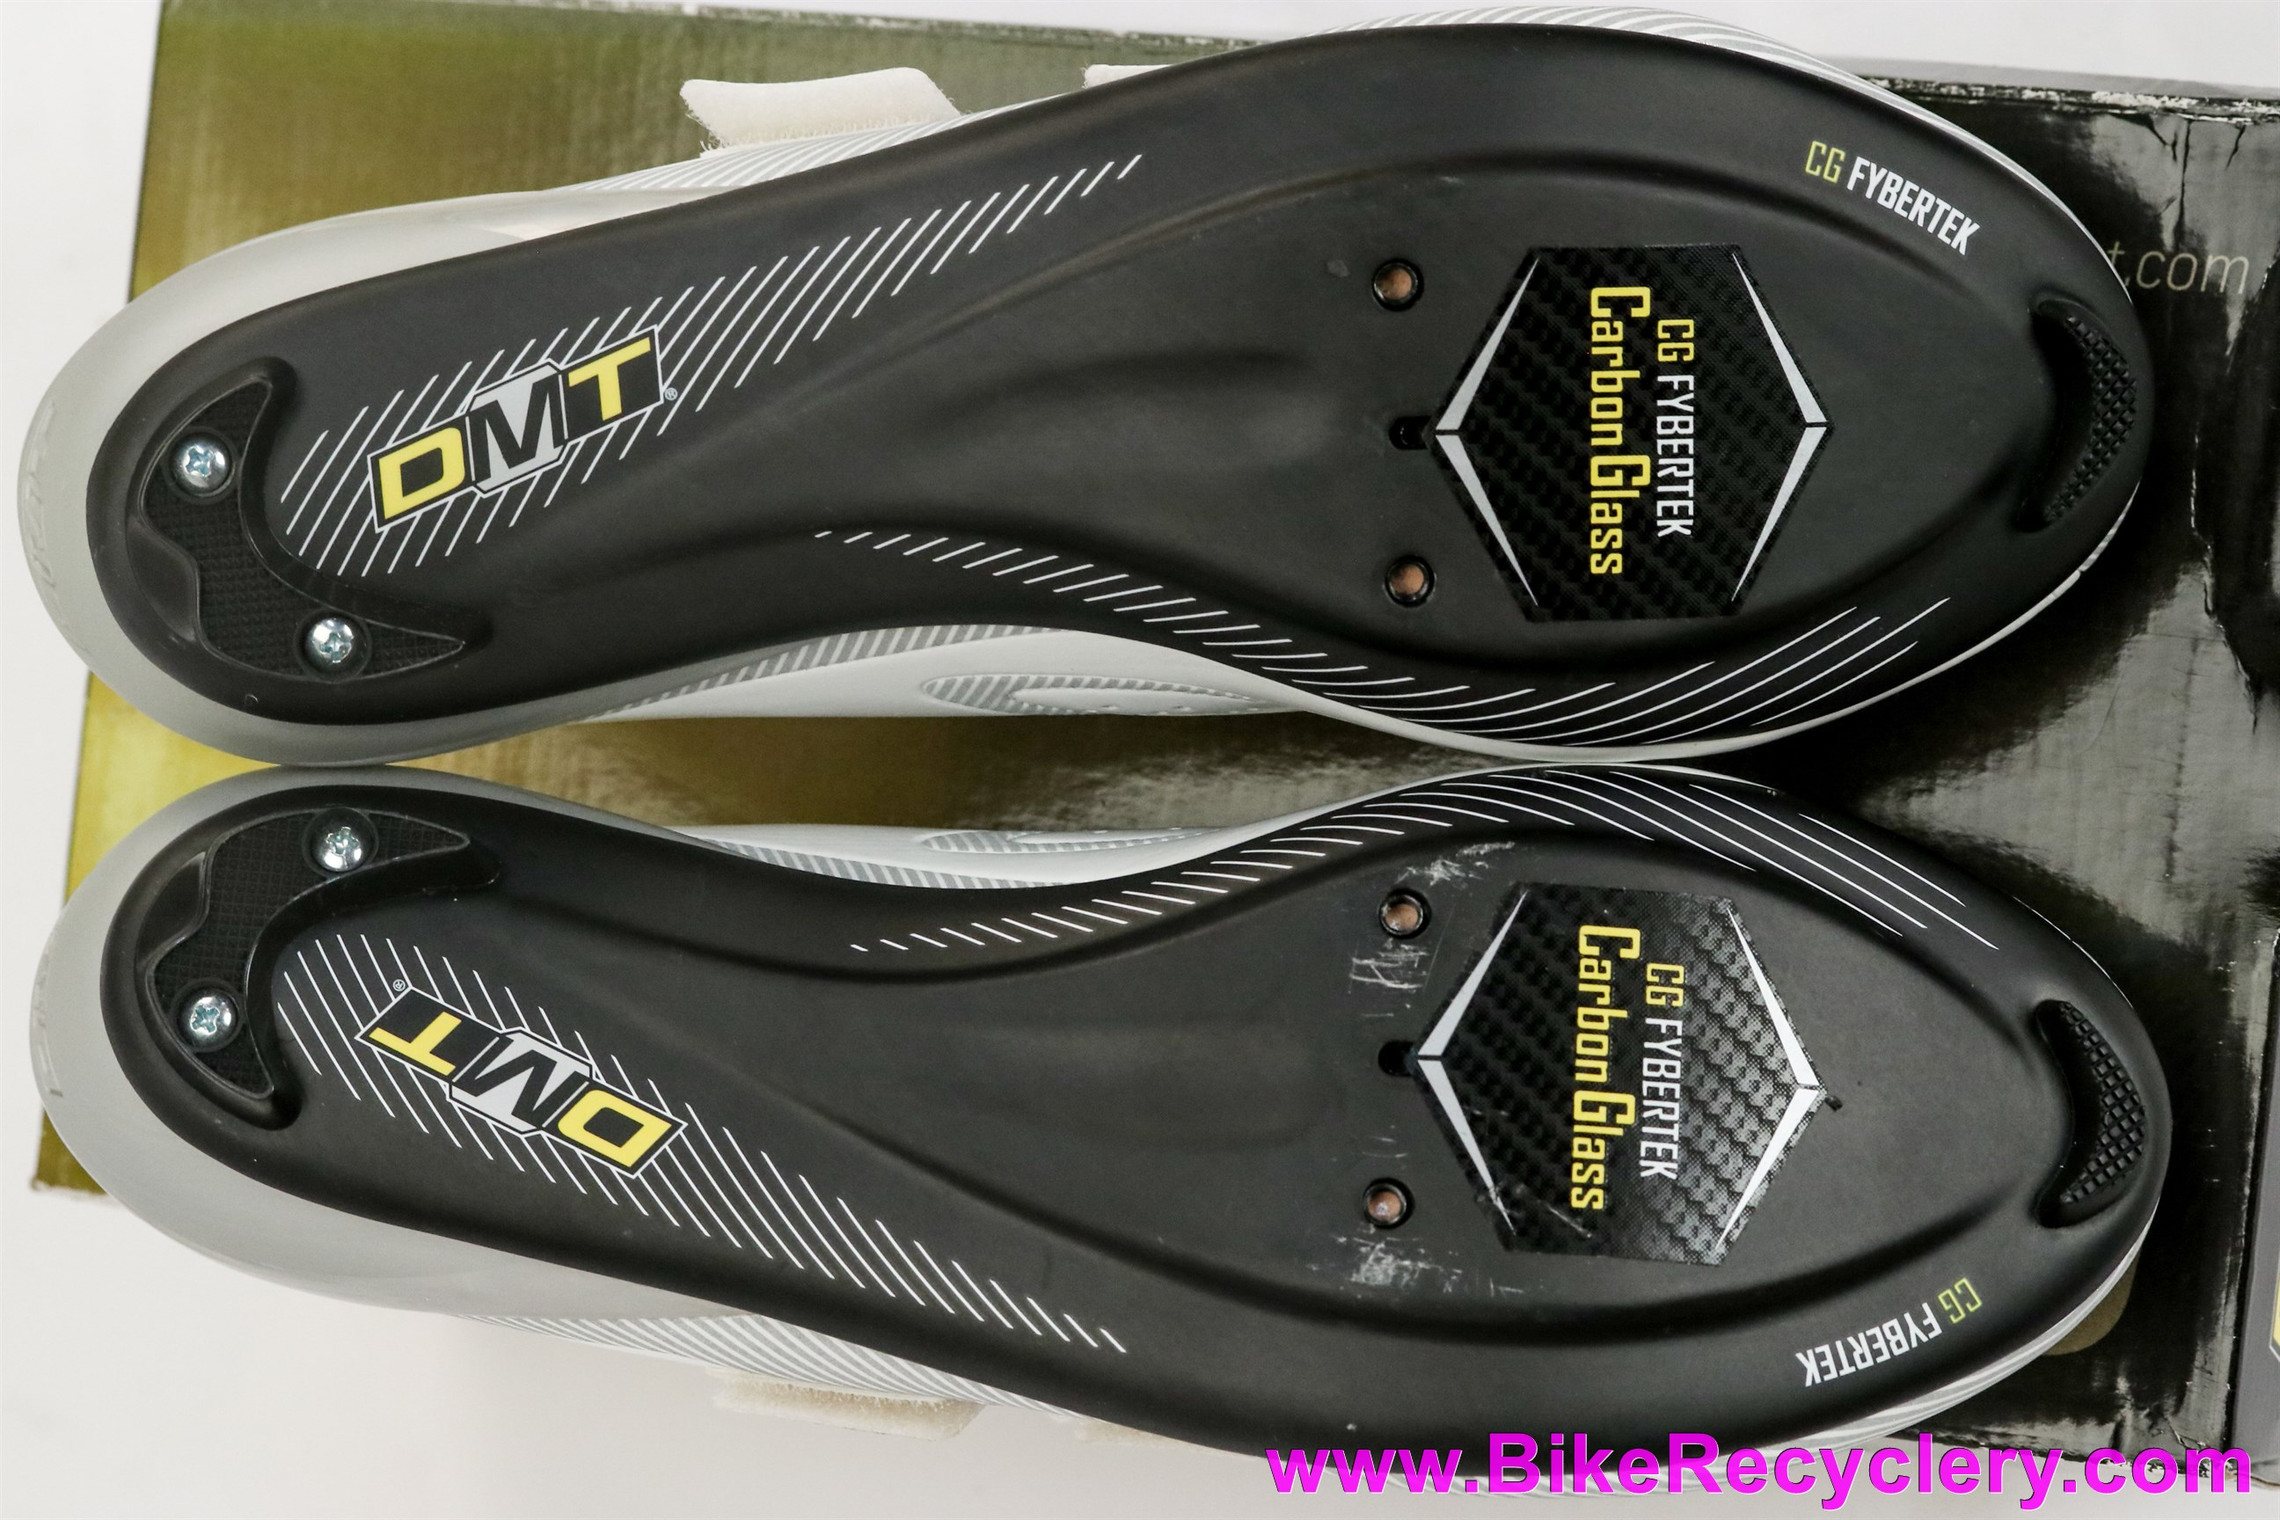 Diamante DMT Libra Road Shoes 44eu / 10US - Carbon Sole - White - 3-Bolt (NEW)